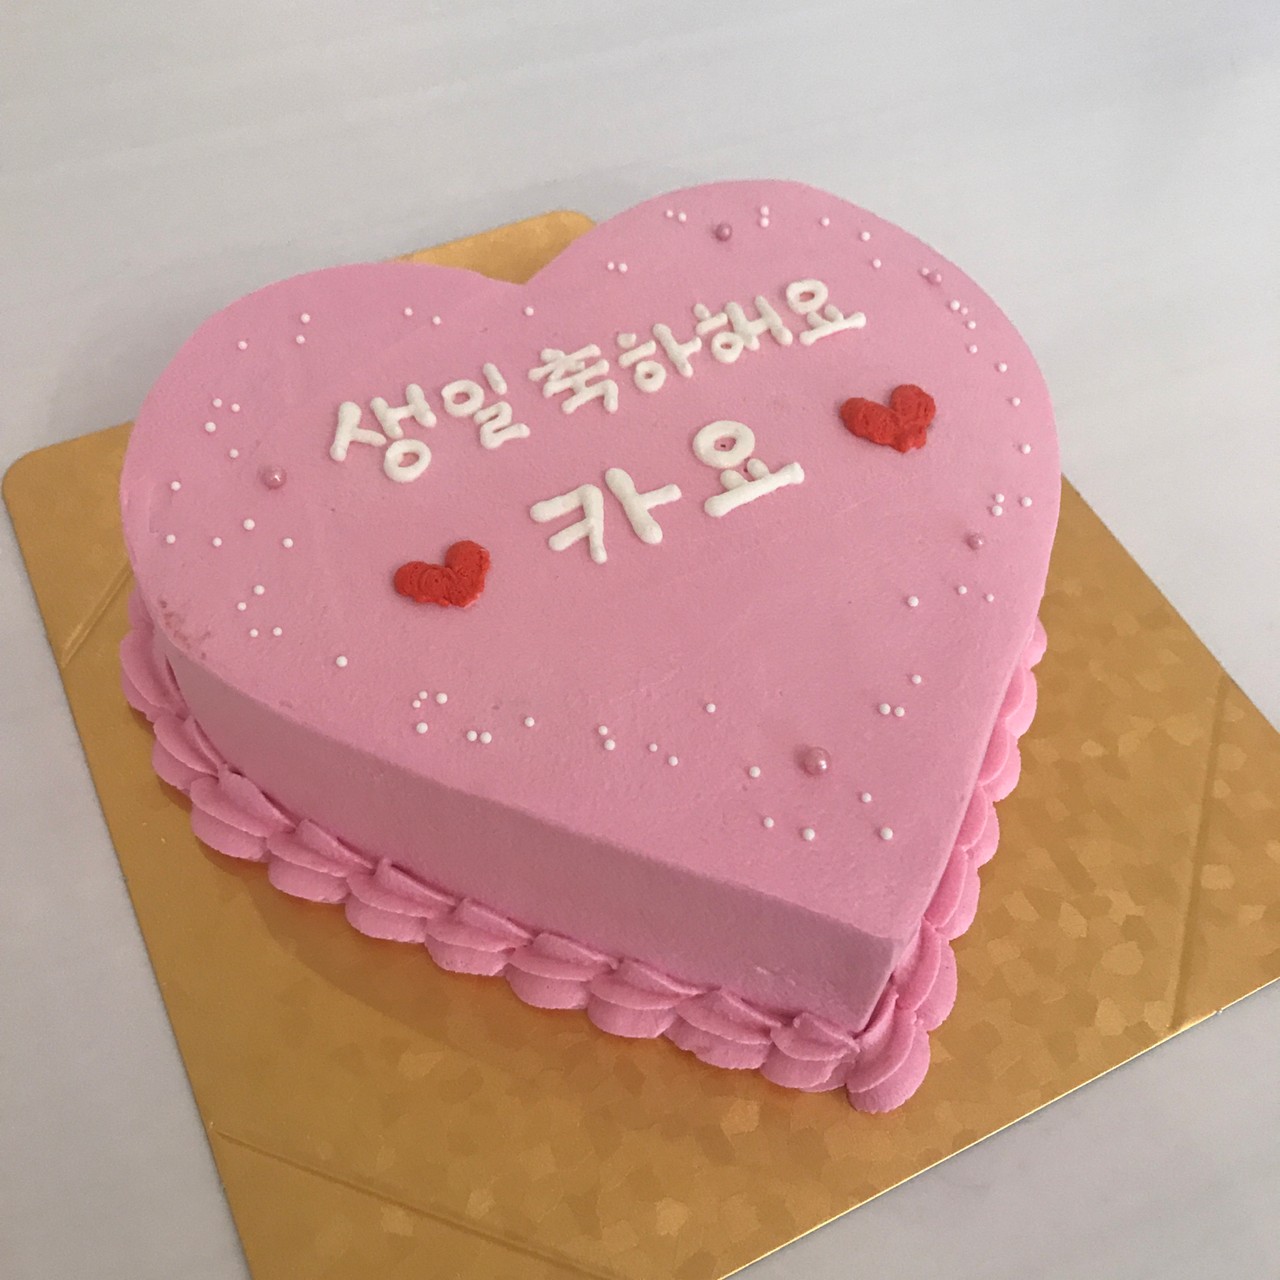 チョコレートケーキ 18cm ハート型
¥8800
